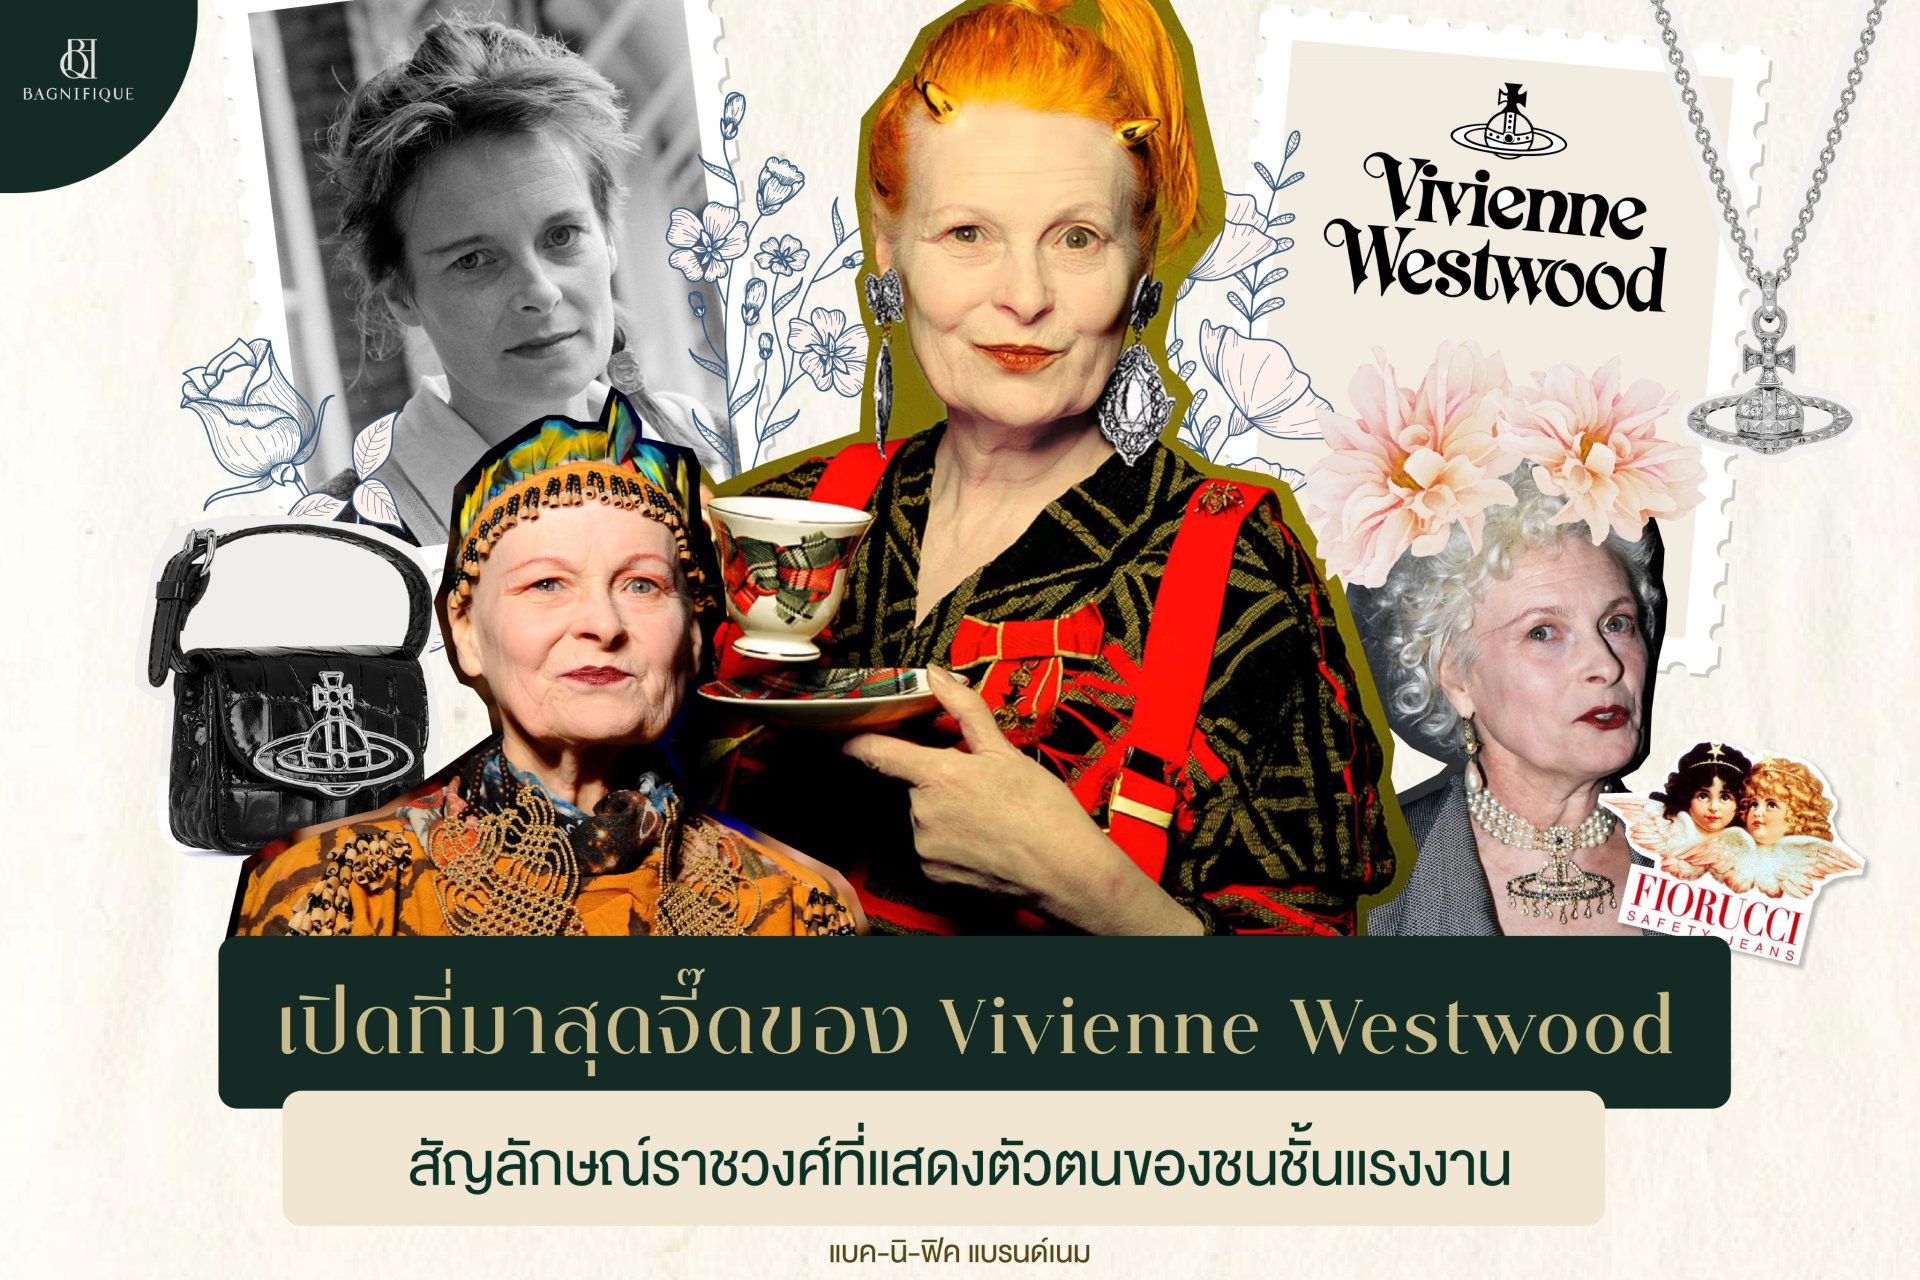 เปิดที่มาสุดจี๊ดของ Vivienne Westwood Orb สัญลักษณ์ราชวงศ์ ที่แสดงตัวตนของชนชั้นแรงงาน